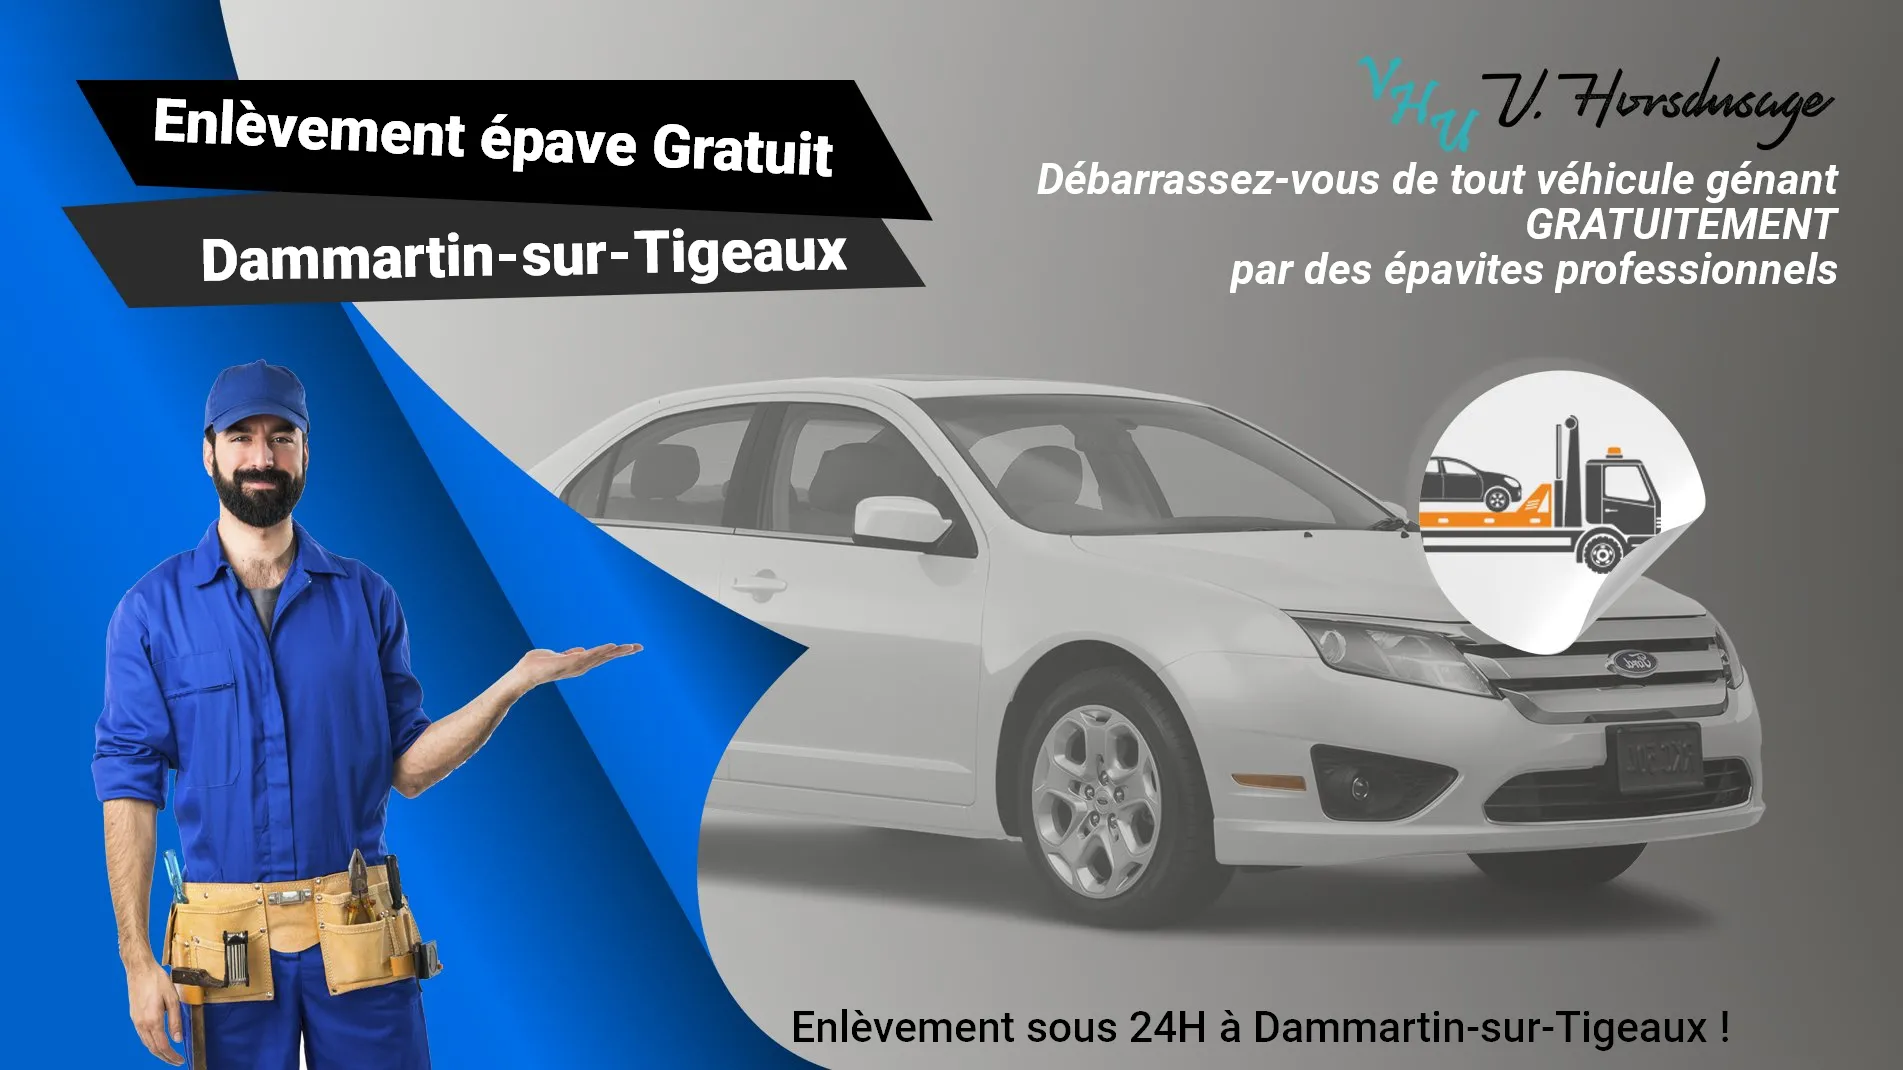 Pour un enlèvement gratuit à Dammartin-sur-Tigeaux, contactez nos épavistes agréé VHU